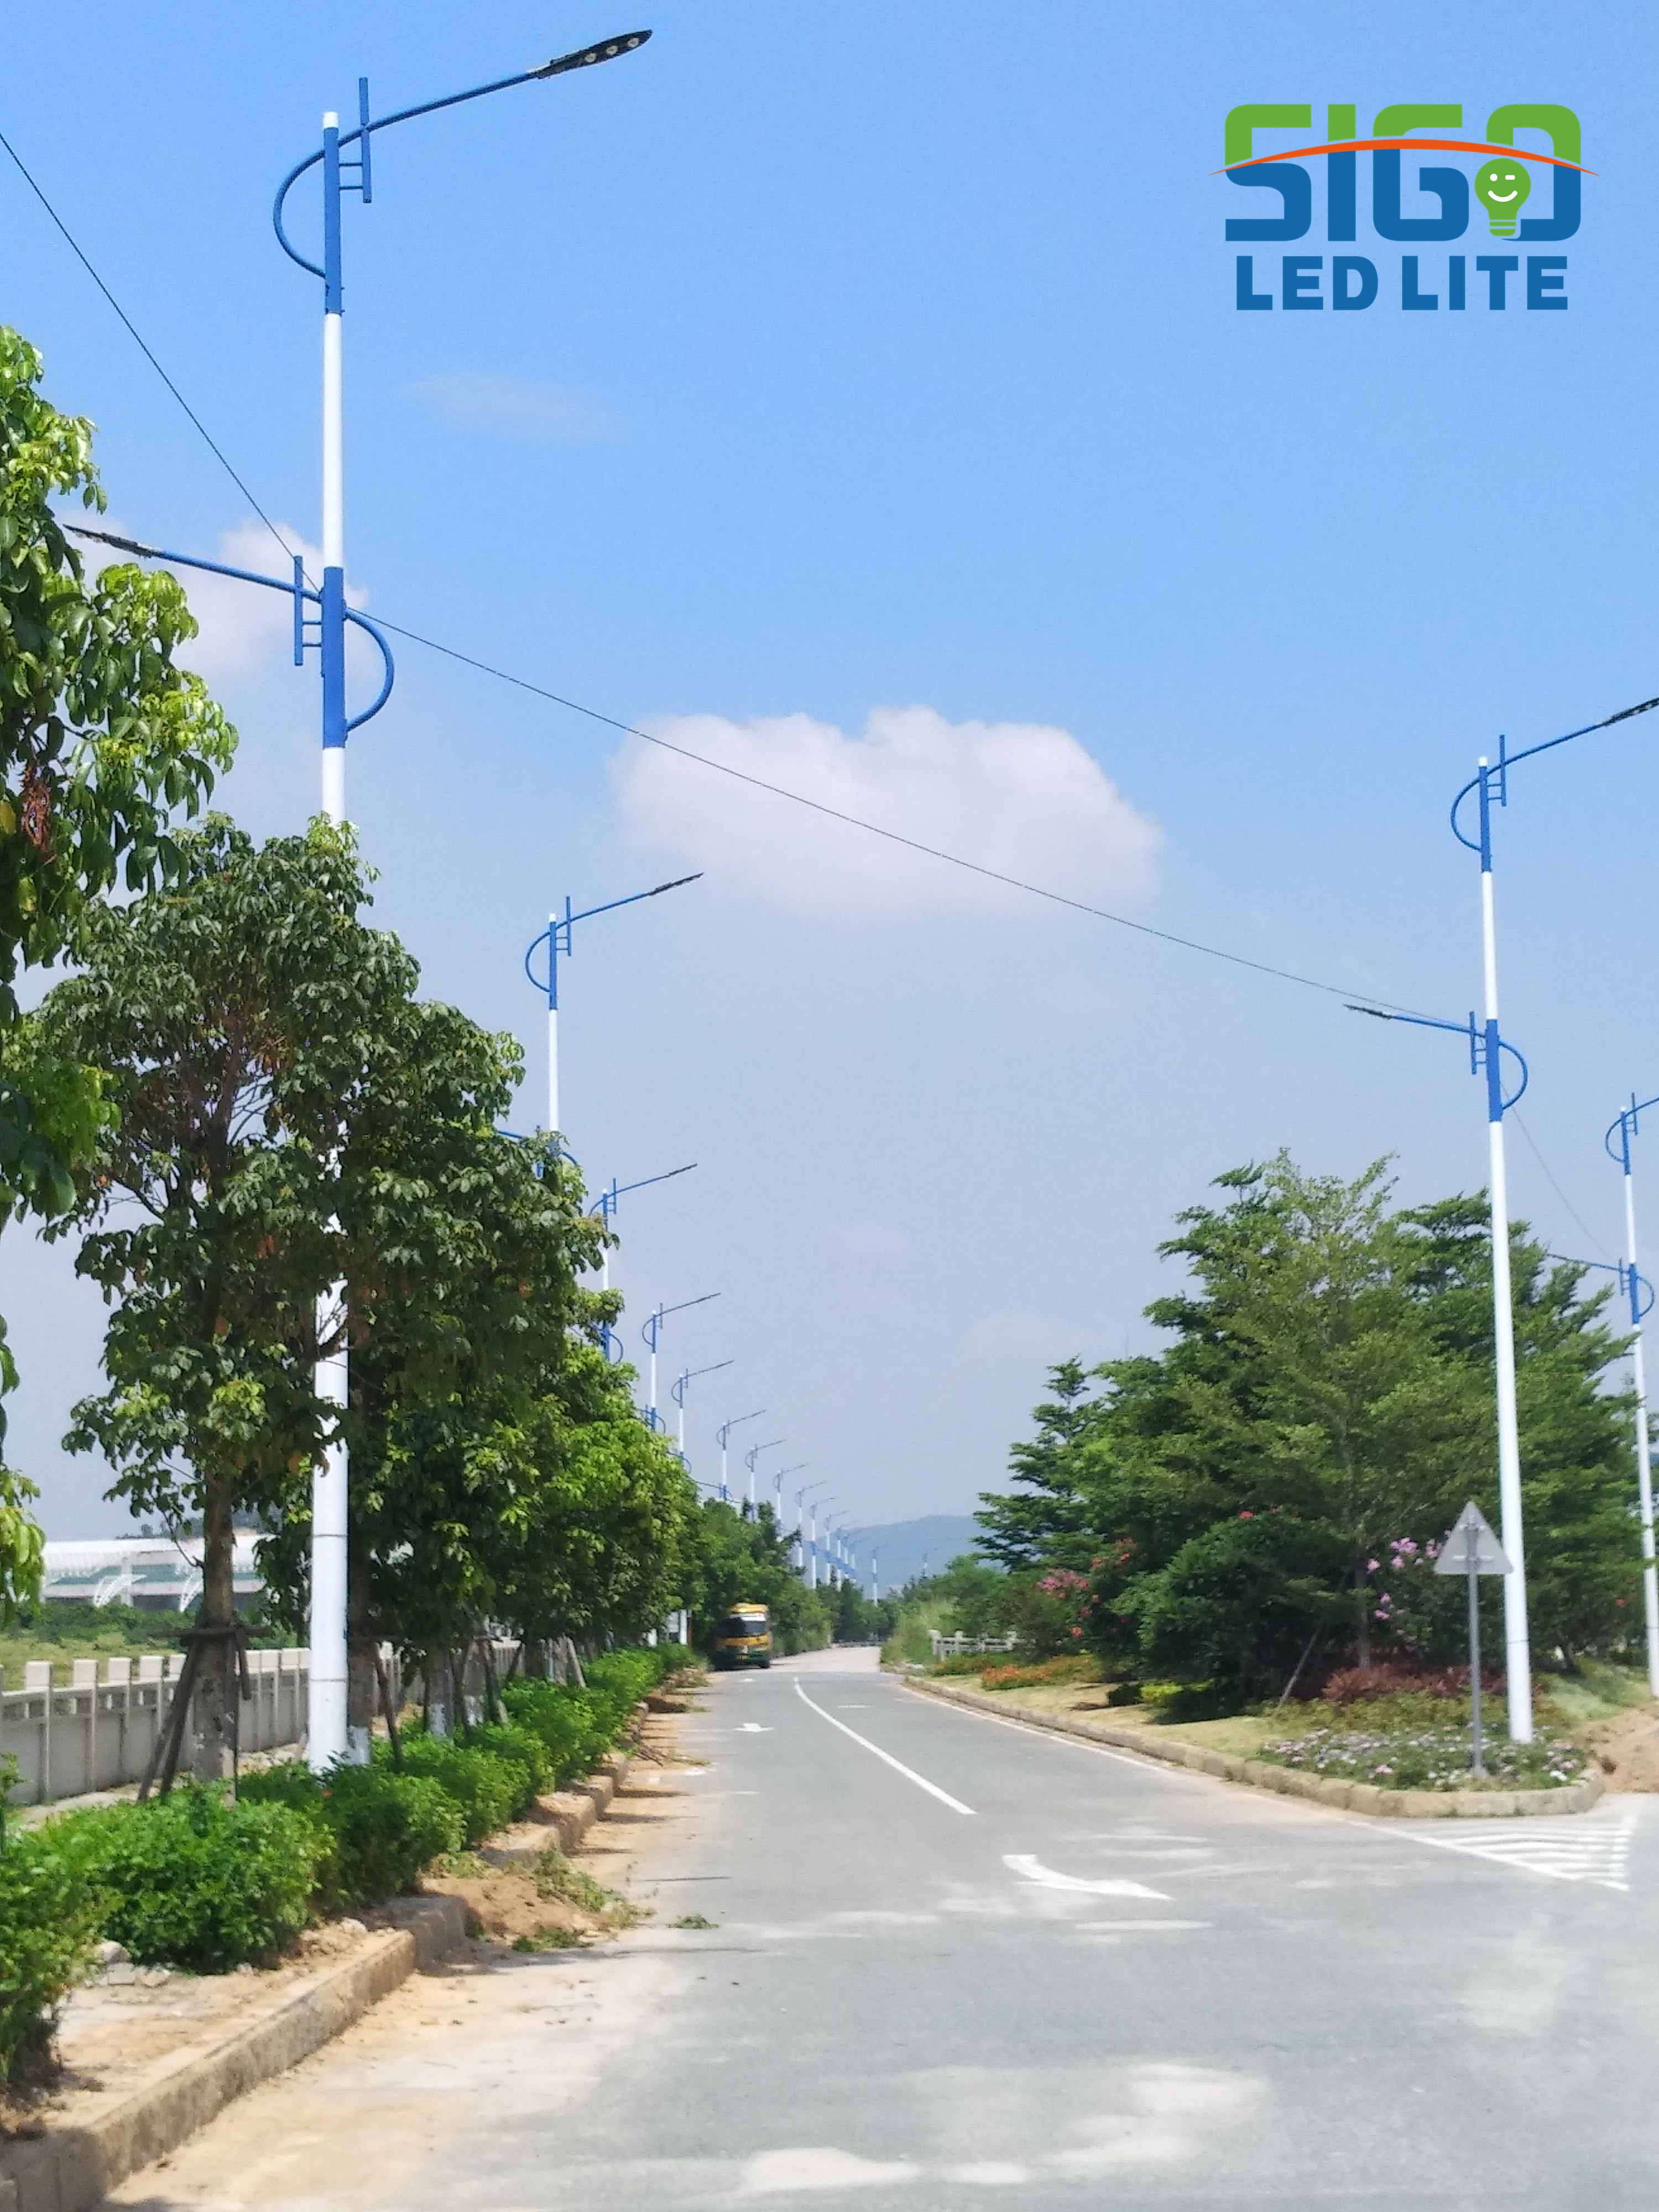 New rural solar street light installation precautions